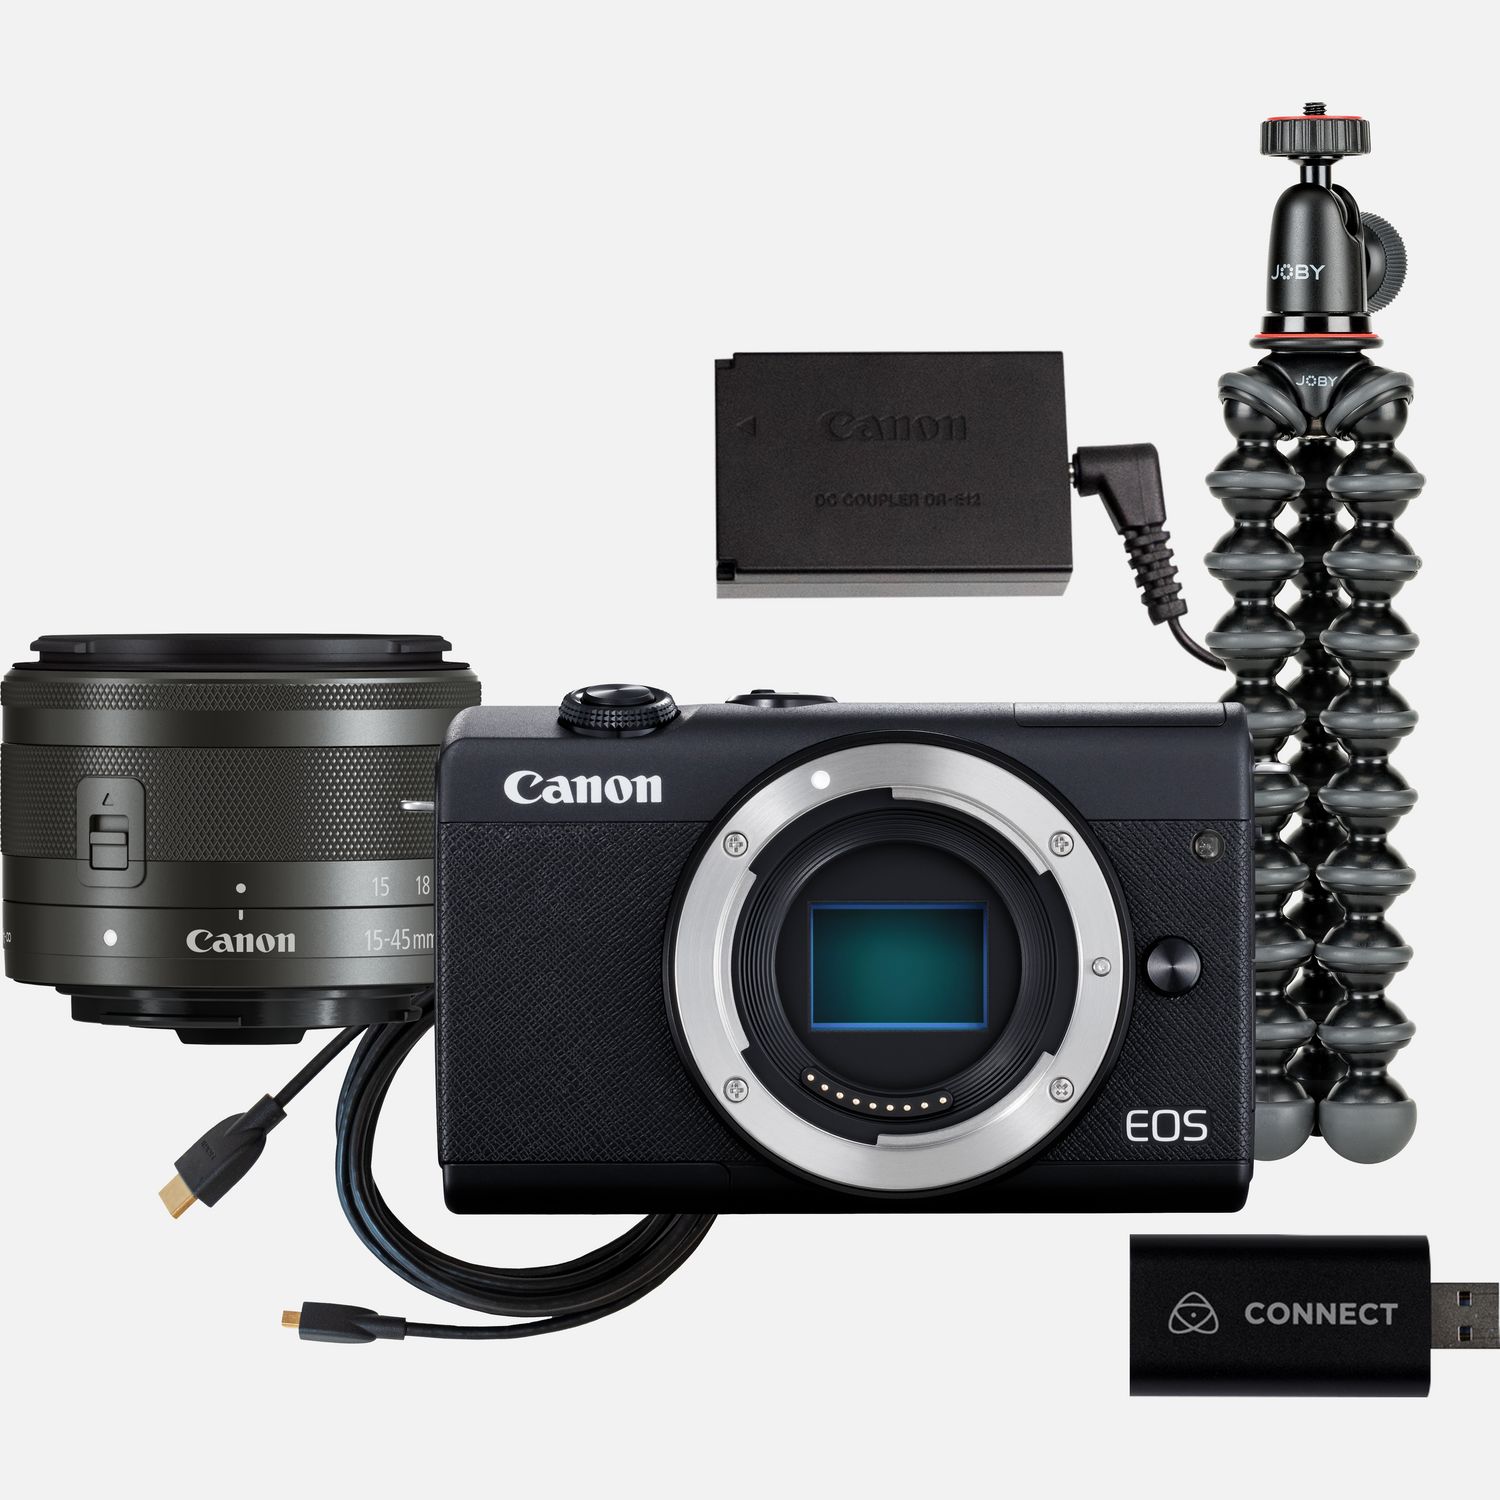 Image of Kit per live streaming con fotocamera EOS M200 e obiettivo intercambiabile Canon